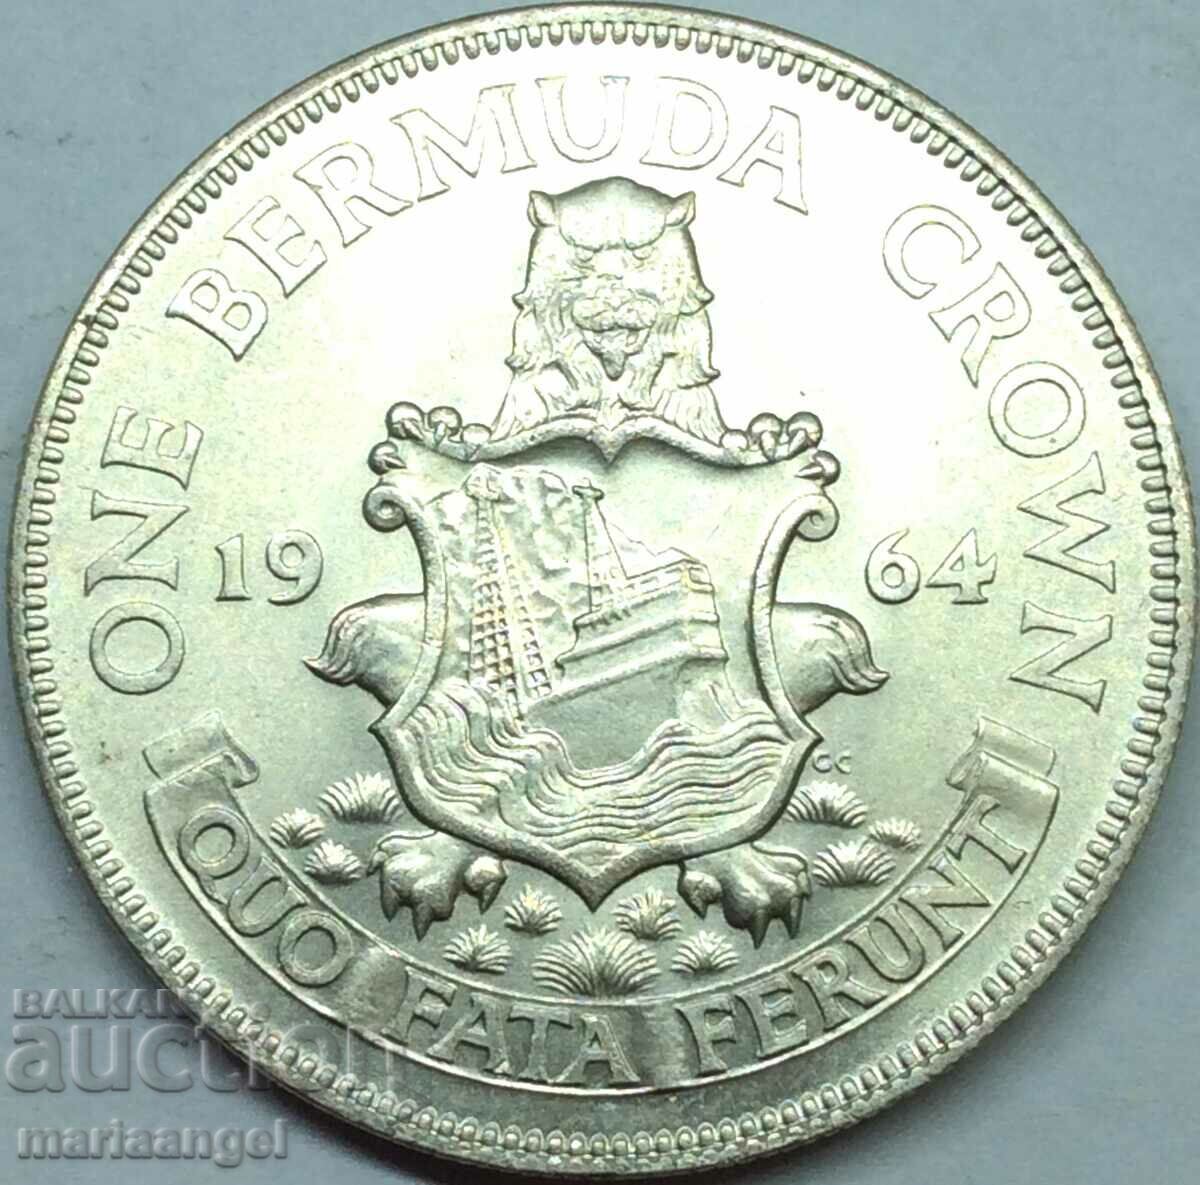 1 coroană 1964 Bermude Elizabeth II UNC 22,53g argint